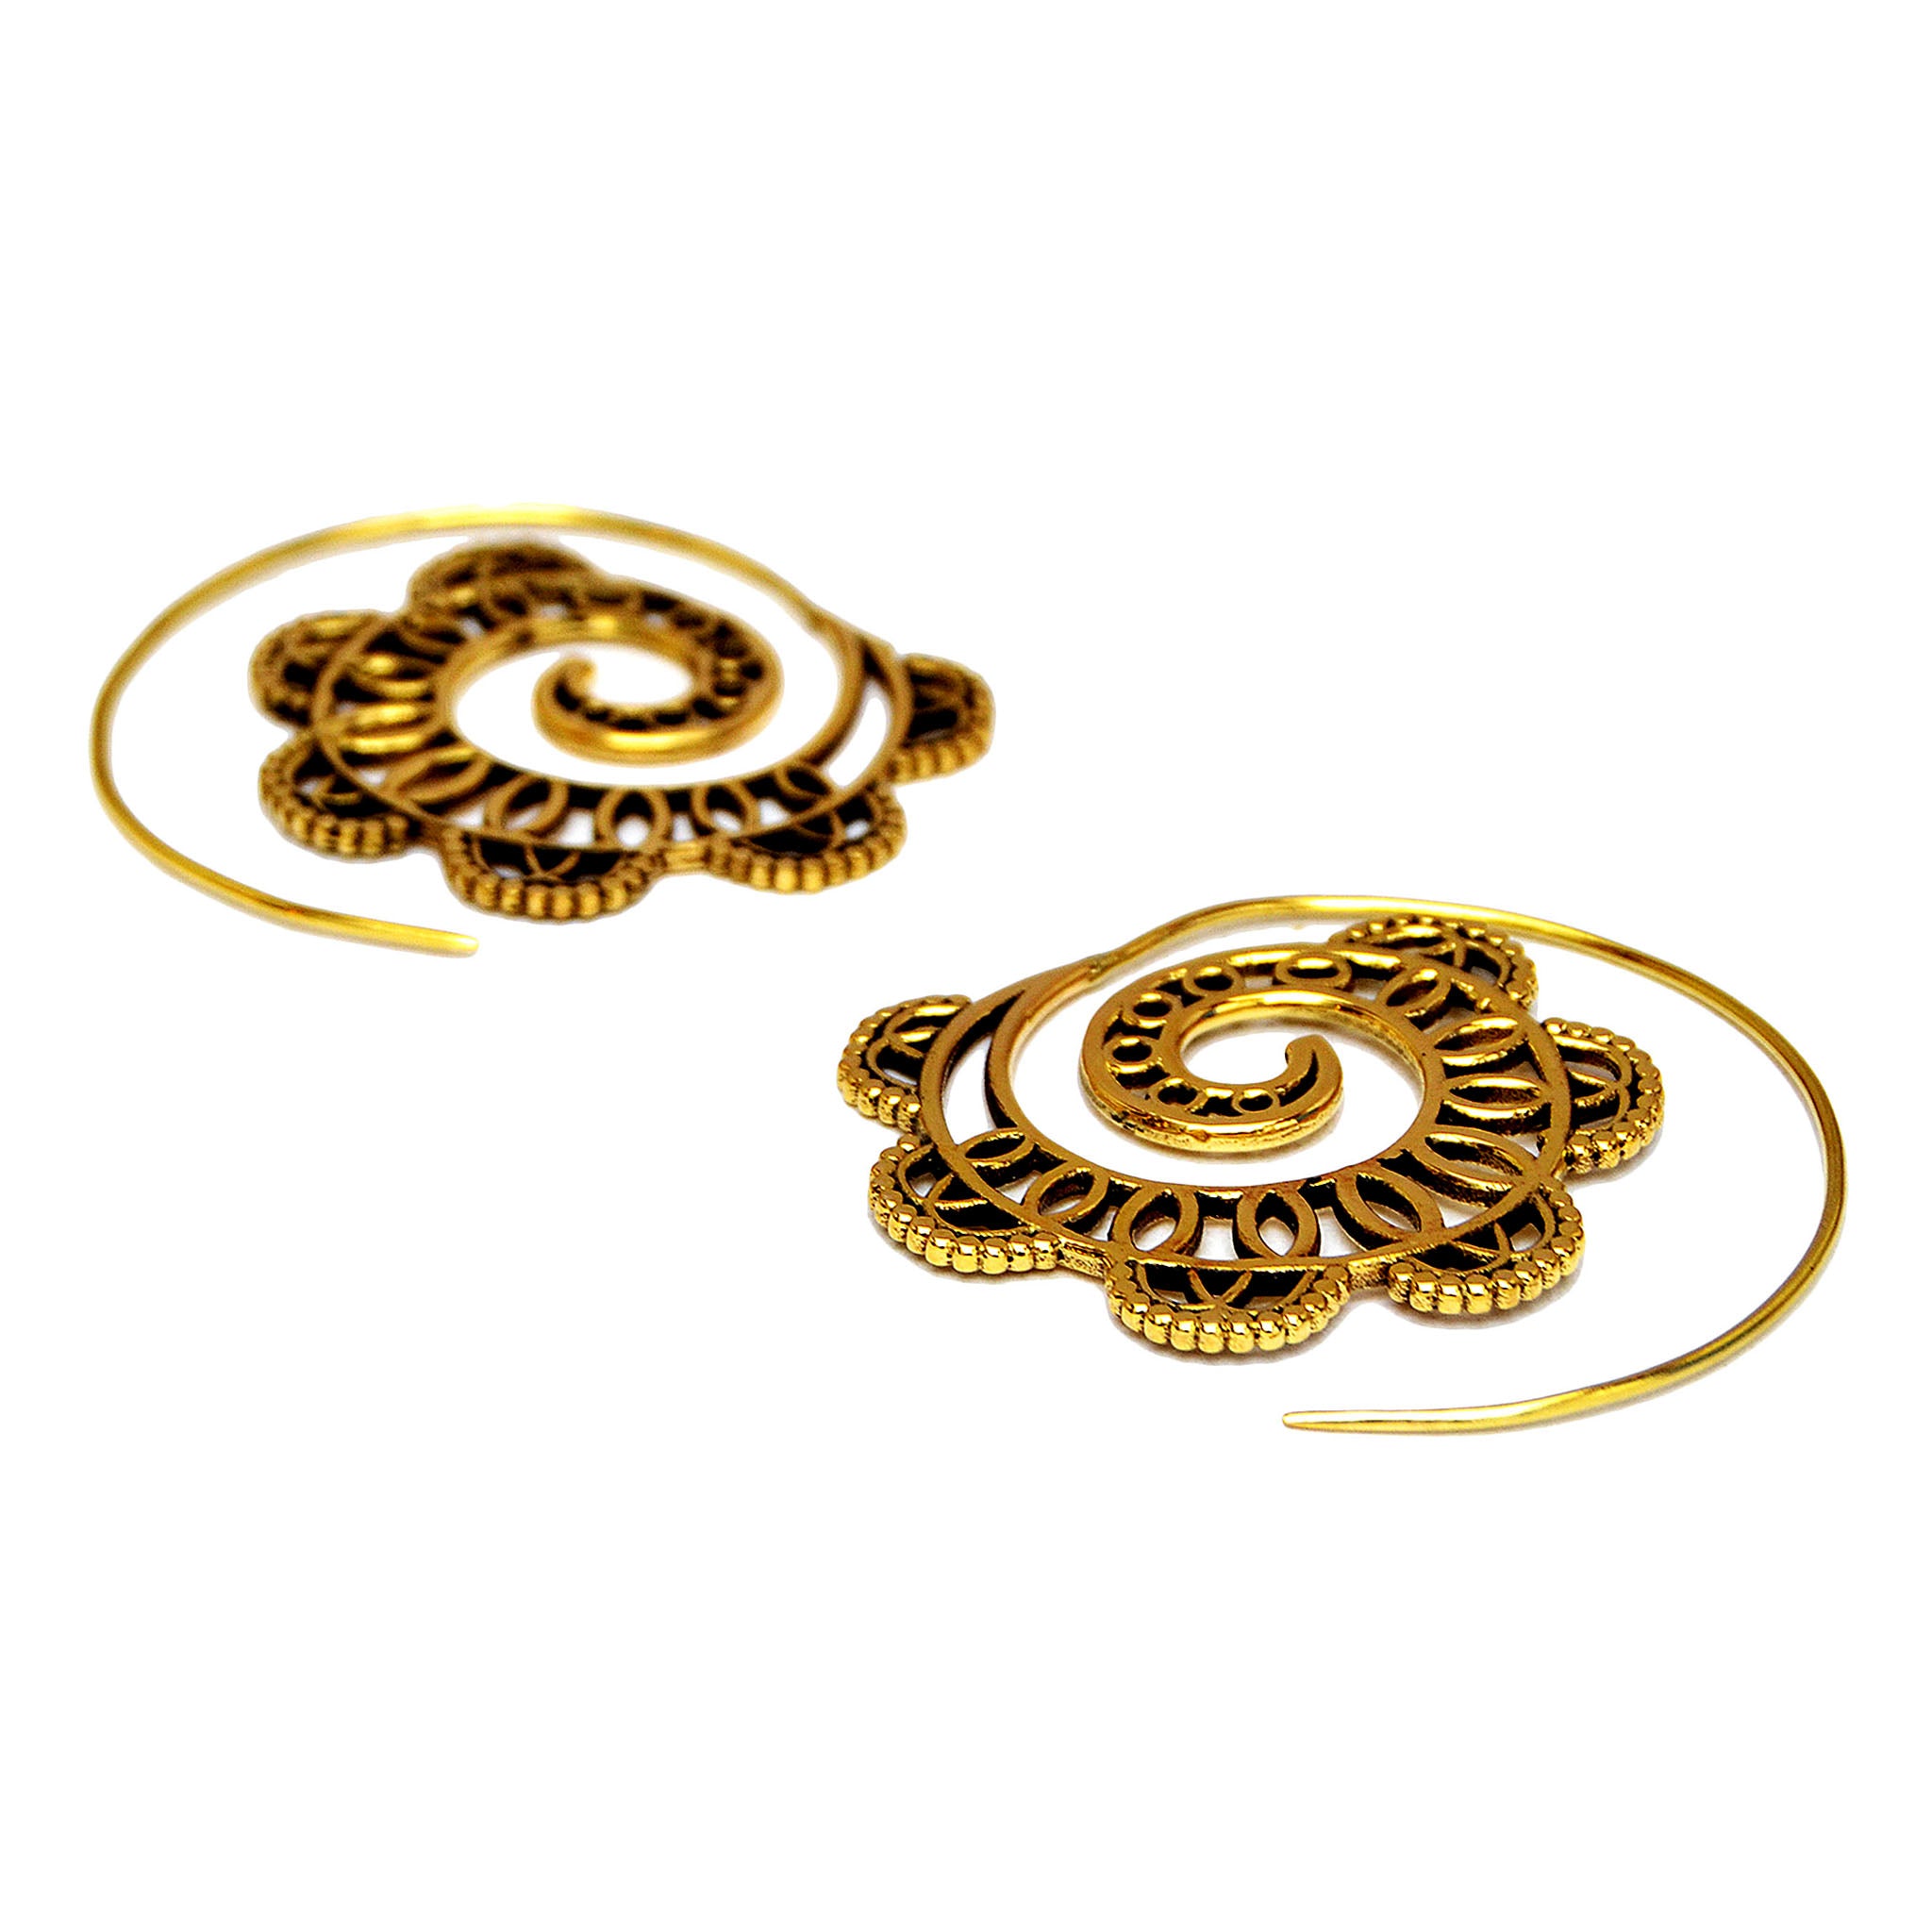 Gold spiral earrings